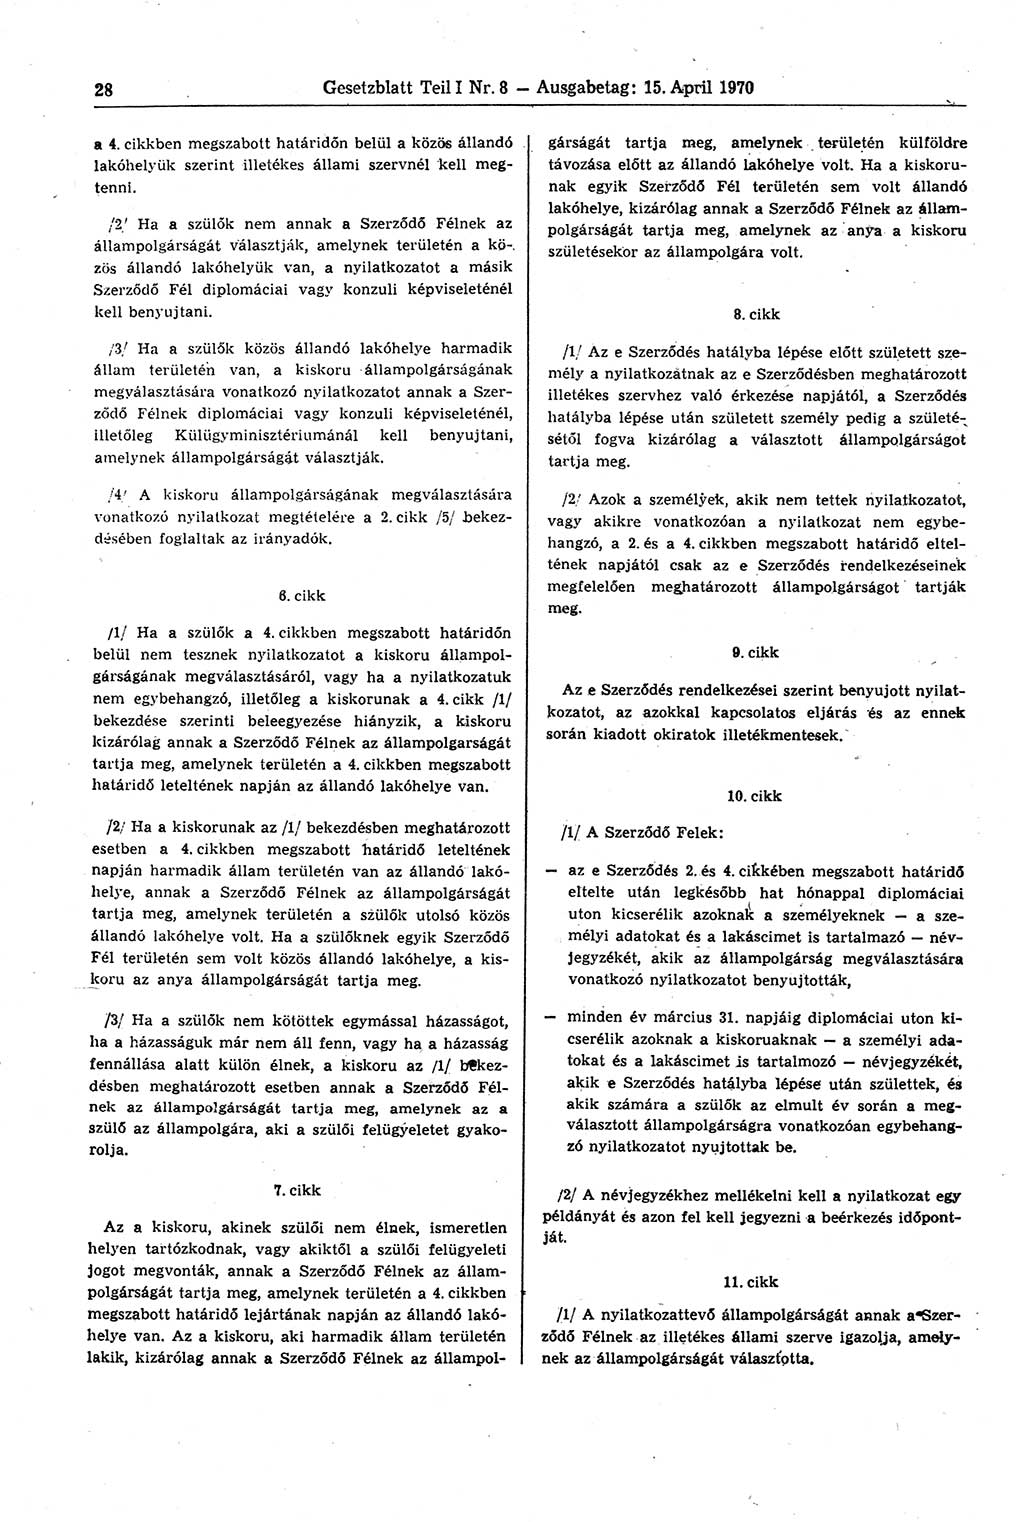 Gesetzblatt (GBl.) der Deutschen Demokratischen Republik (DDR) Teil Ⅰ 1970, Seite 28 (GBl. DDR Ⅰ 1970, S. 28)